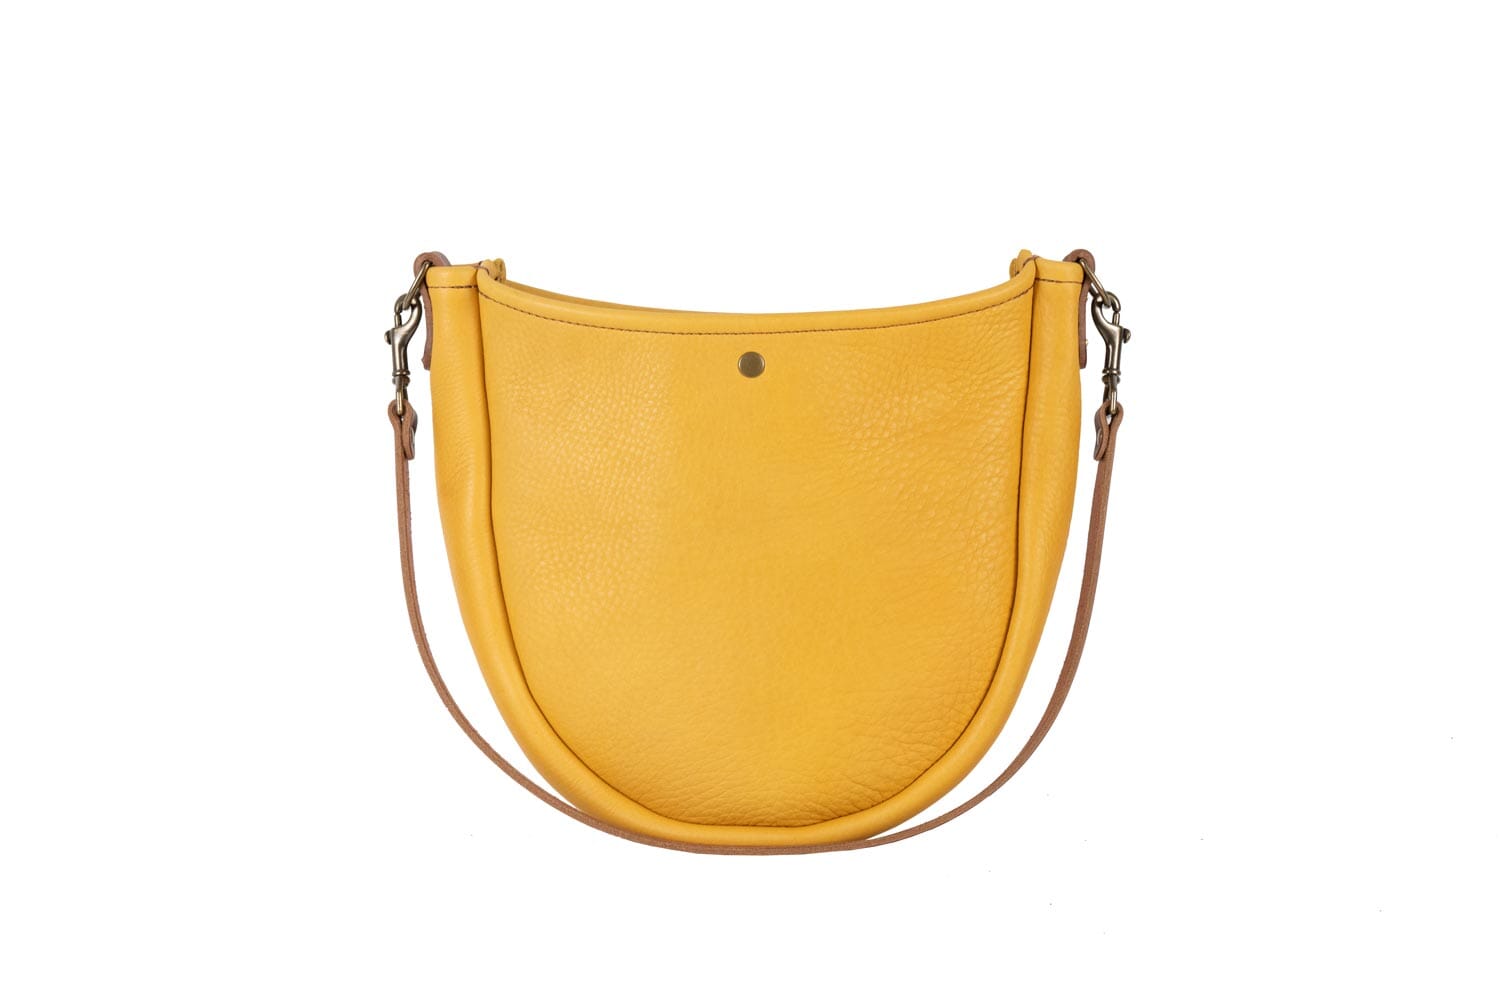 Celeste Leather Hobo Bag - Golden Sun